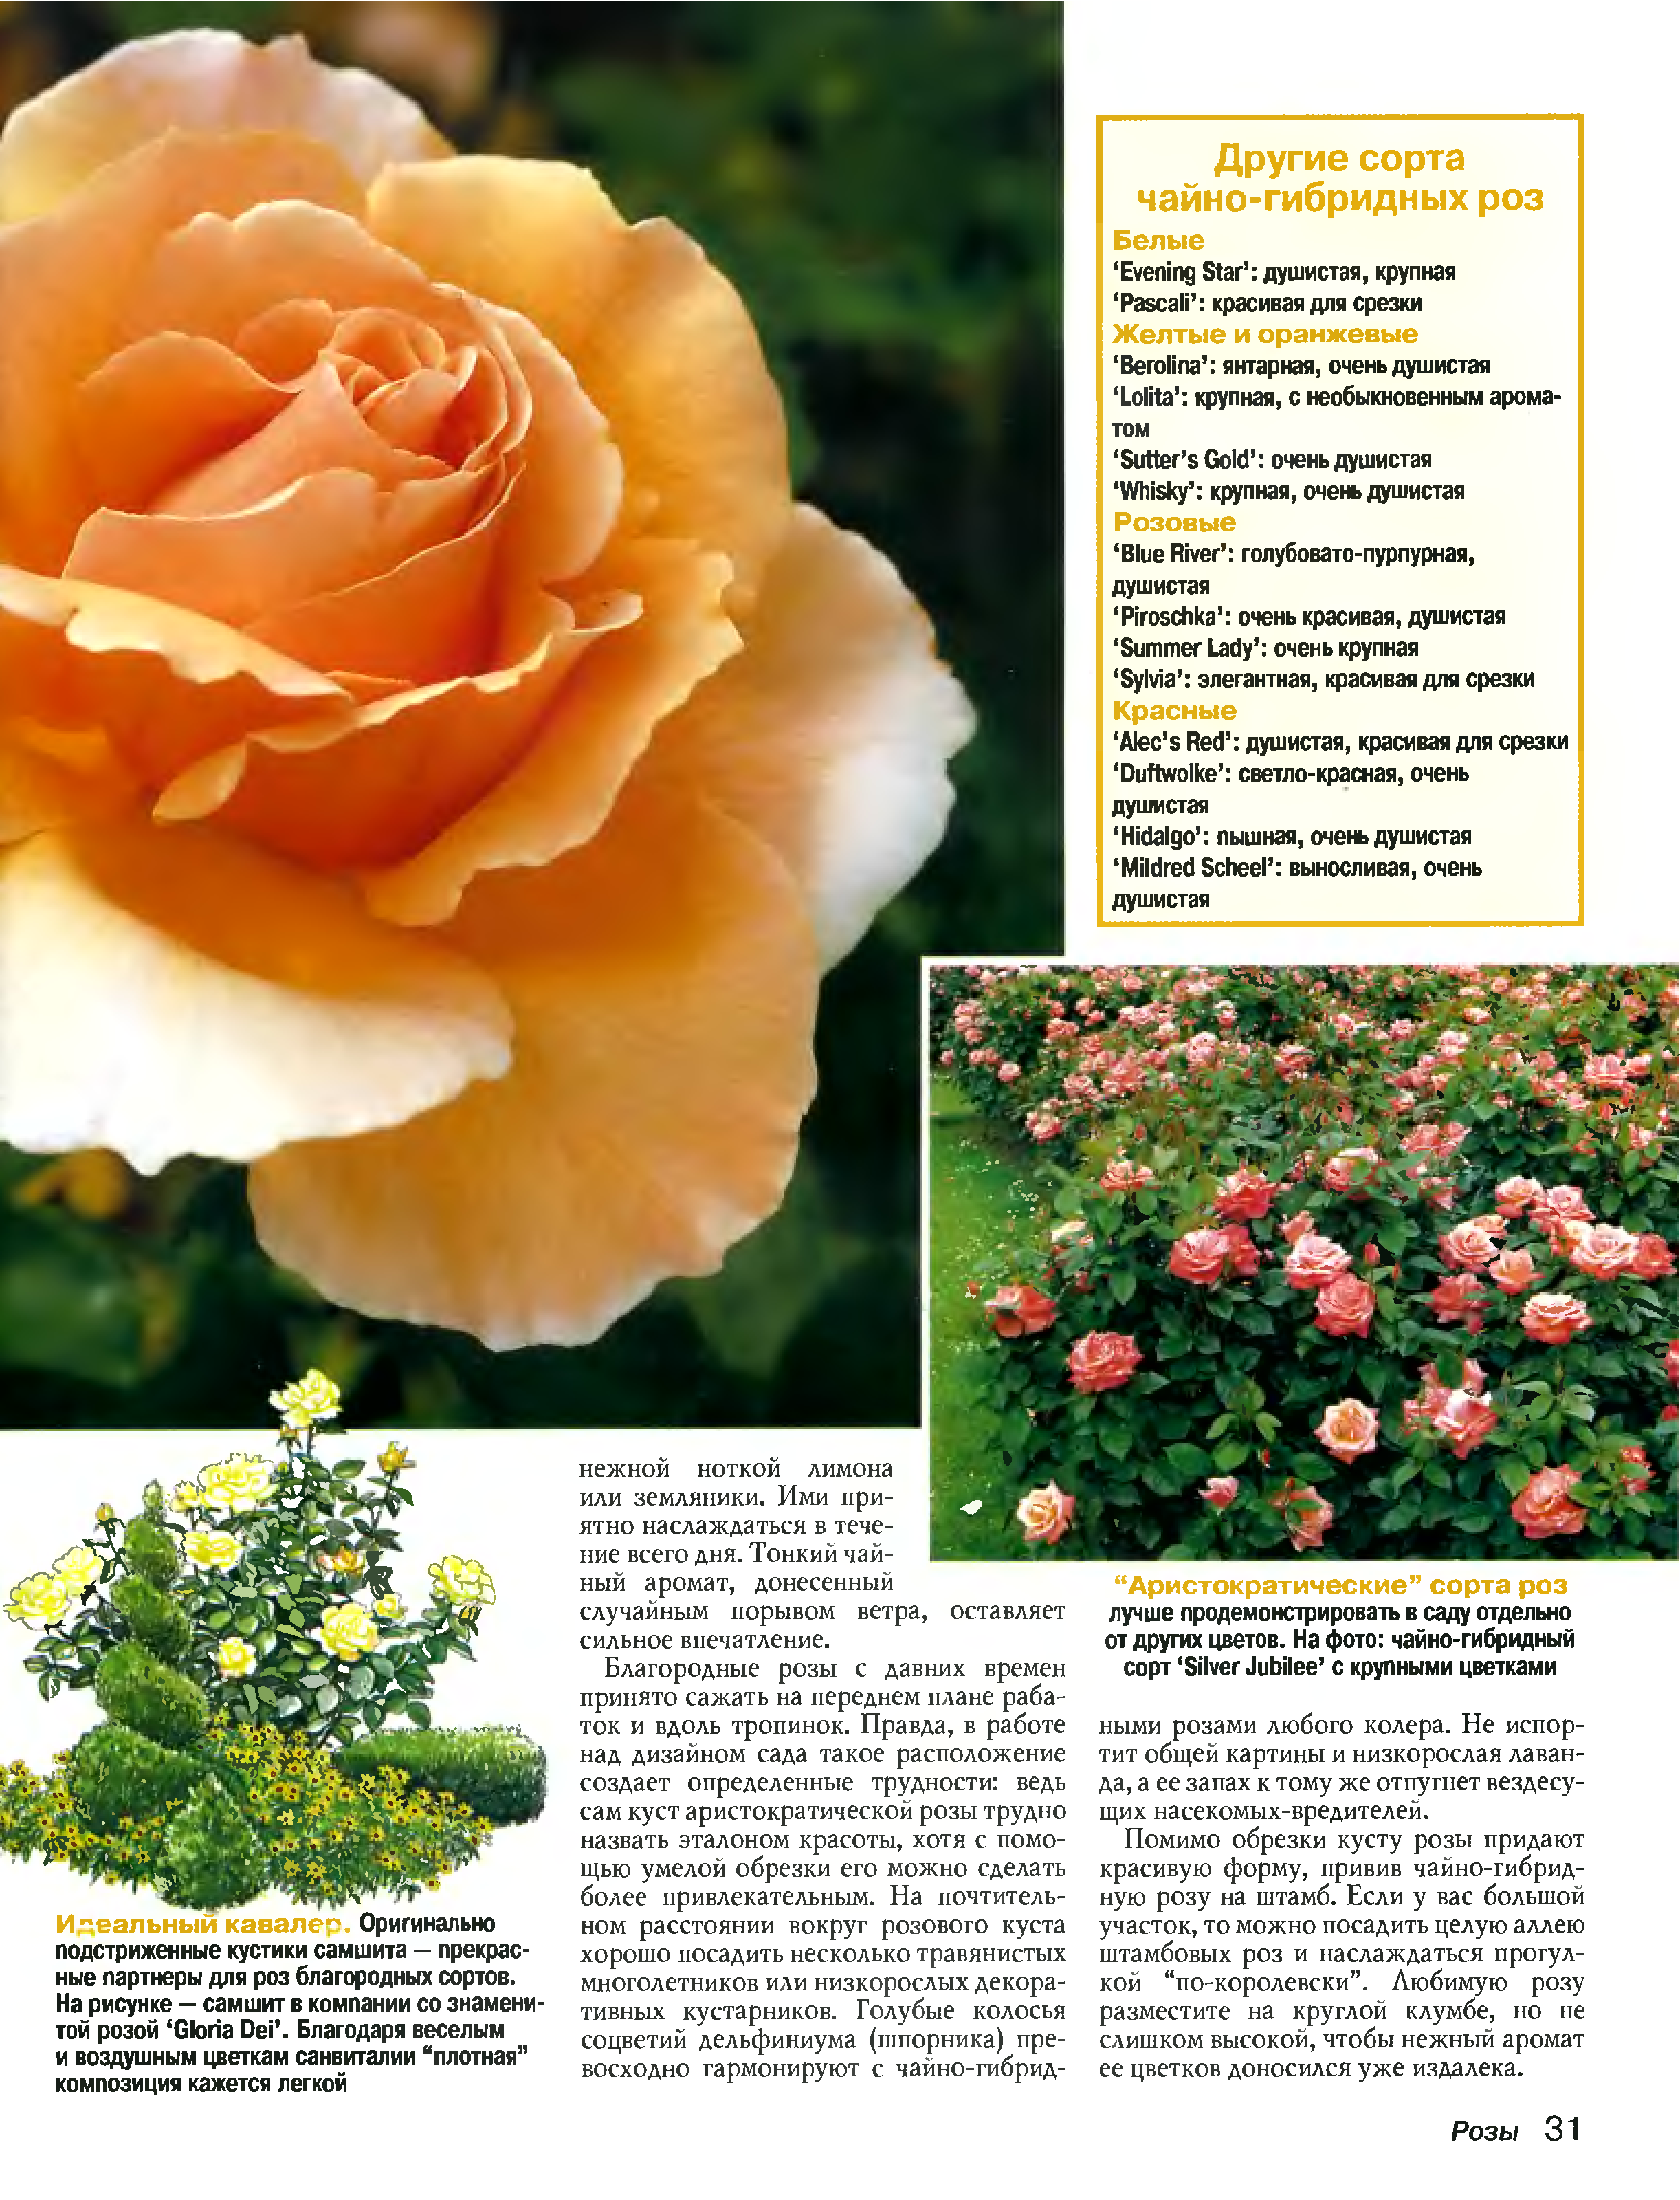 Ангела роза - описание и характеристики, плюсы и минусы, правила ухода | розоцвет